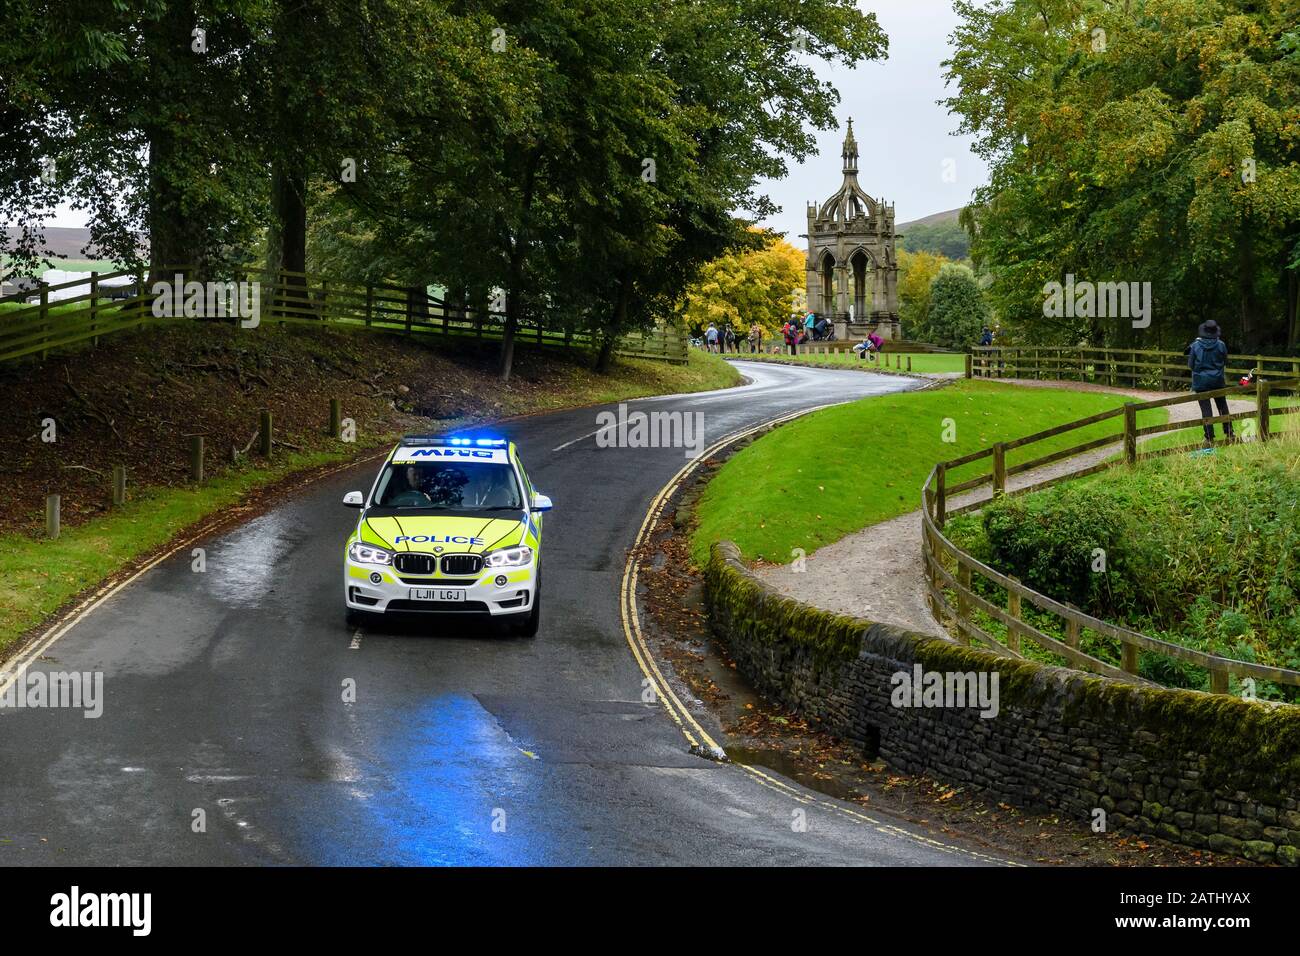 Auto della polizia che guida e viaggia sulla corsia di campagna con luci blu lampeggianti (veicolo di controllo del traffico BMW all'evento) - Bolton Abbey, Yorkshire, Inghilterra UK Foto Stock